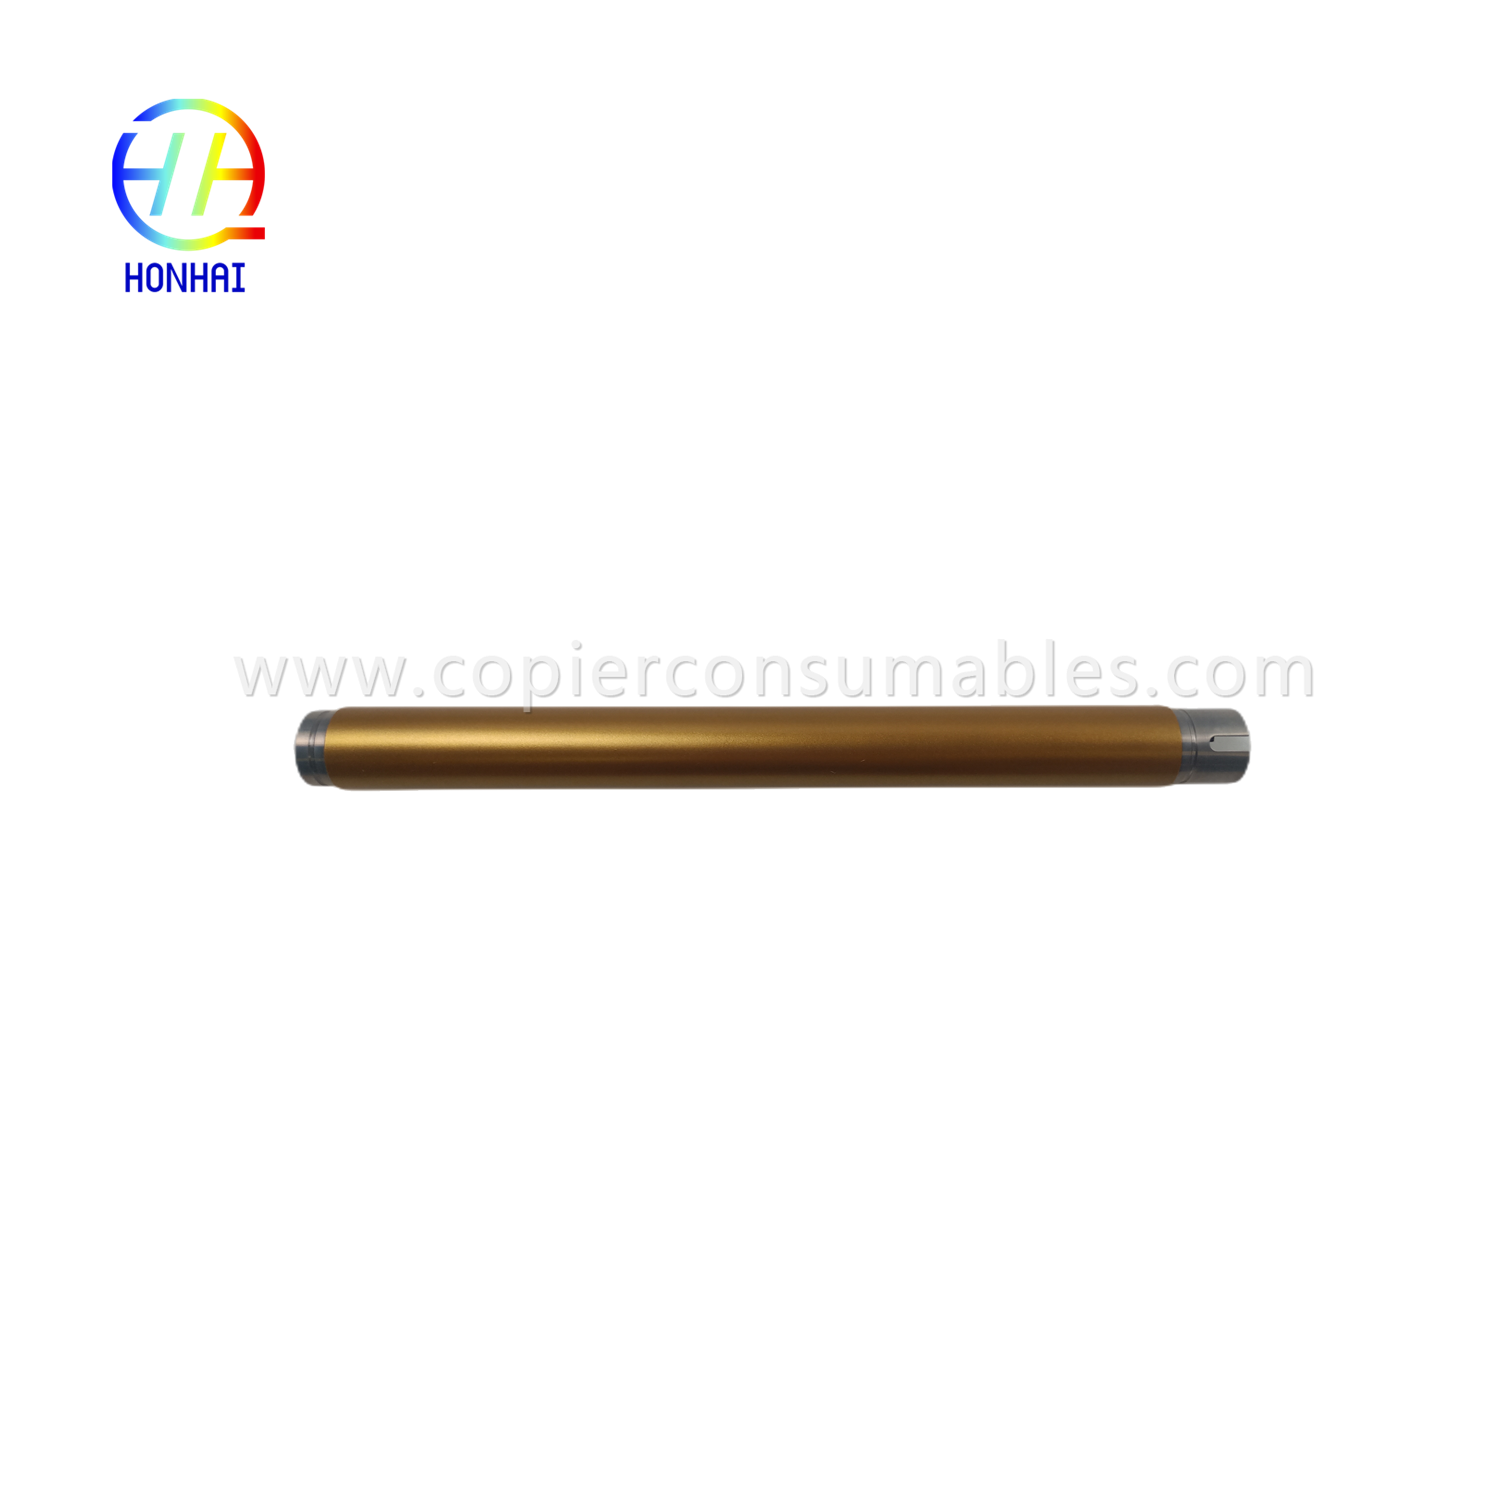 https://www.copierhonhaitech.com/upper-fuser-roller-for-xerox-versaling-b400-3610-3615-3655-heating-roller-01218a-product/